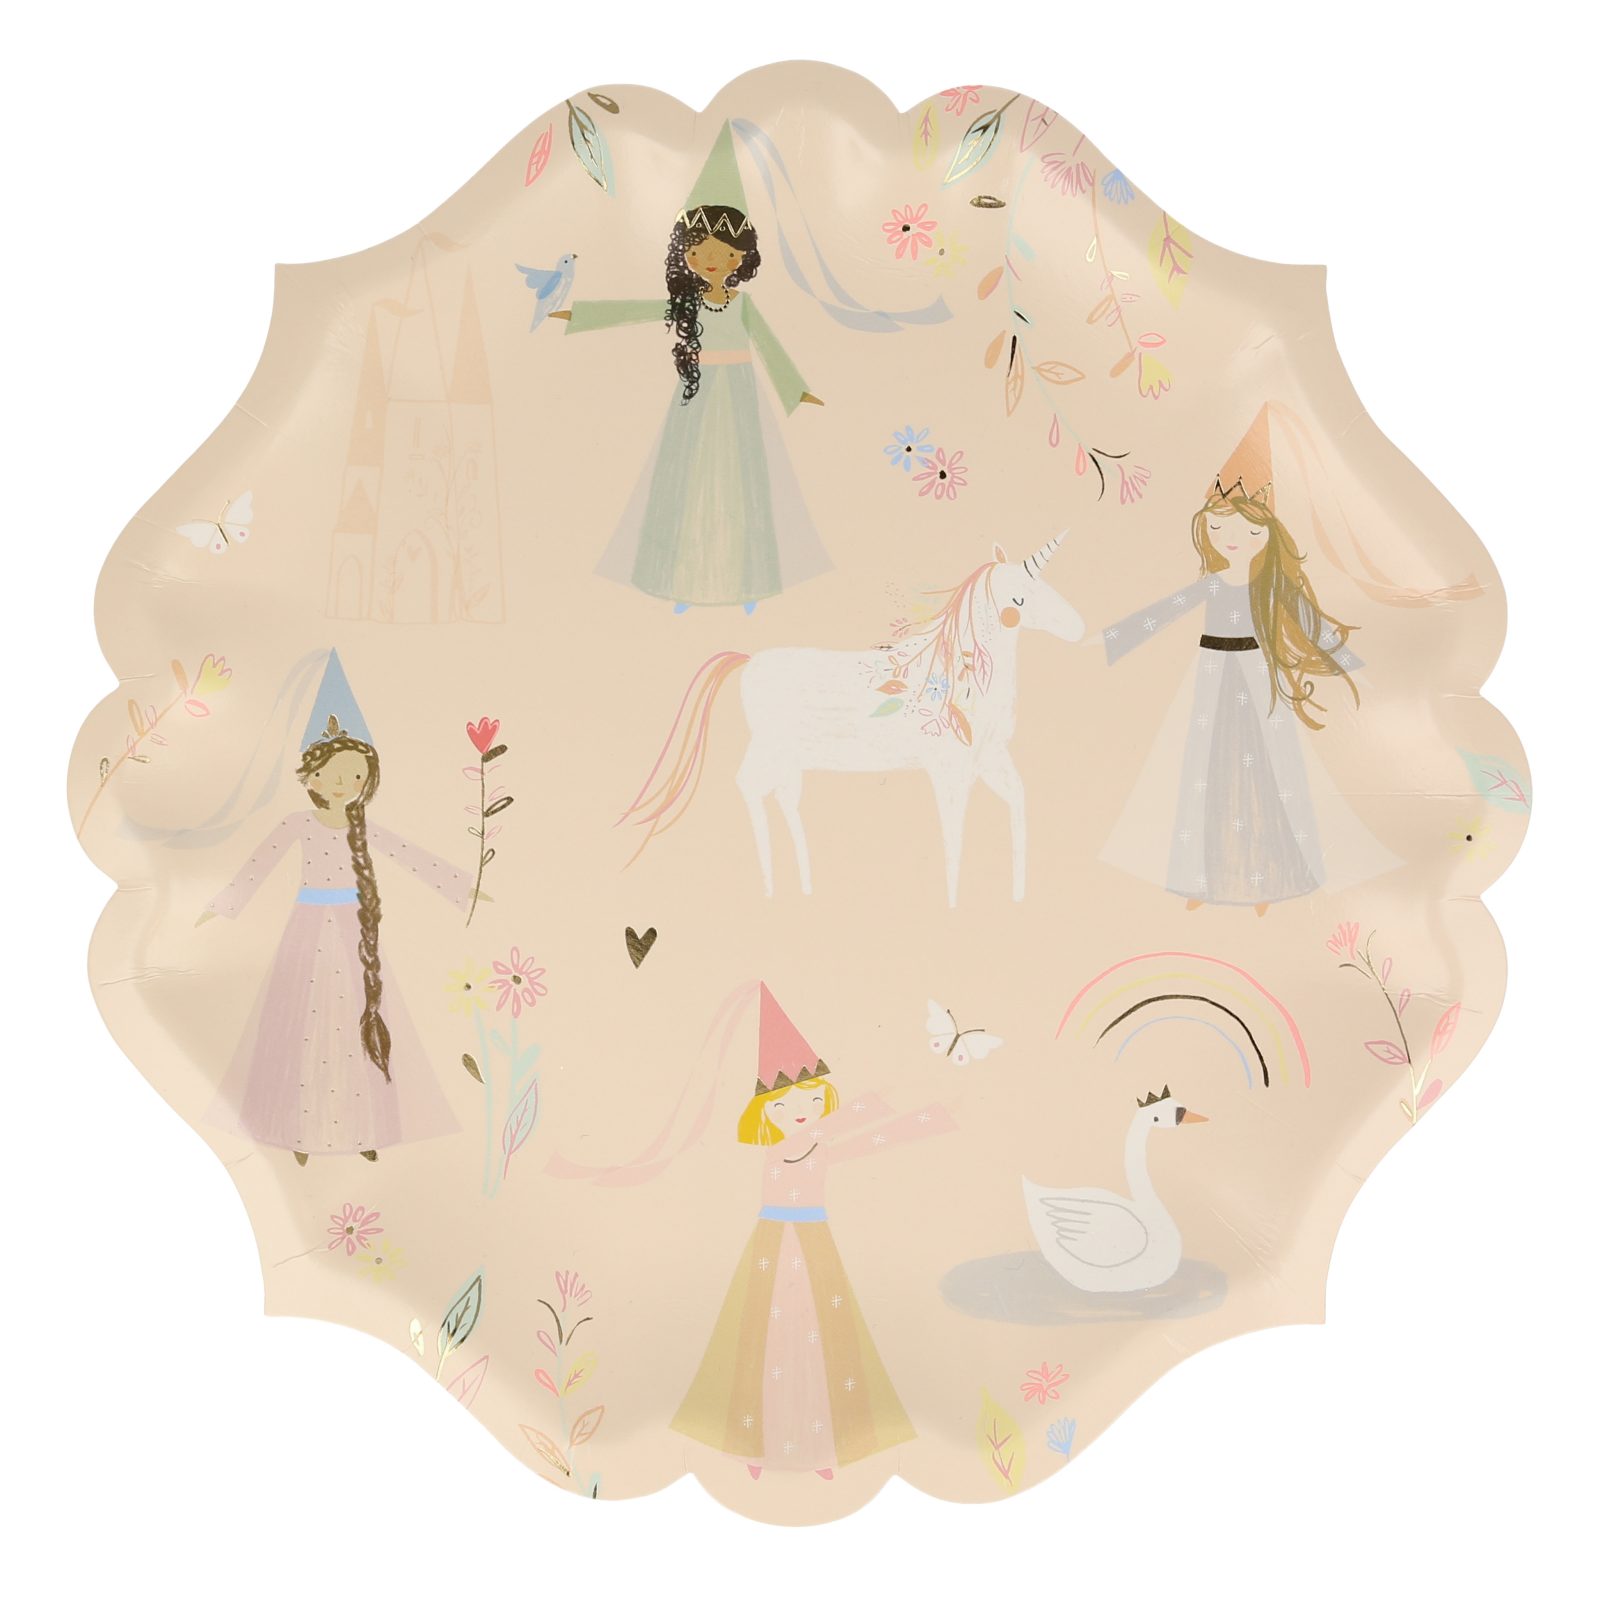 meri meri magical princess plates, large